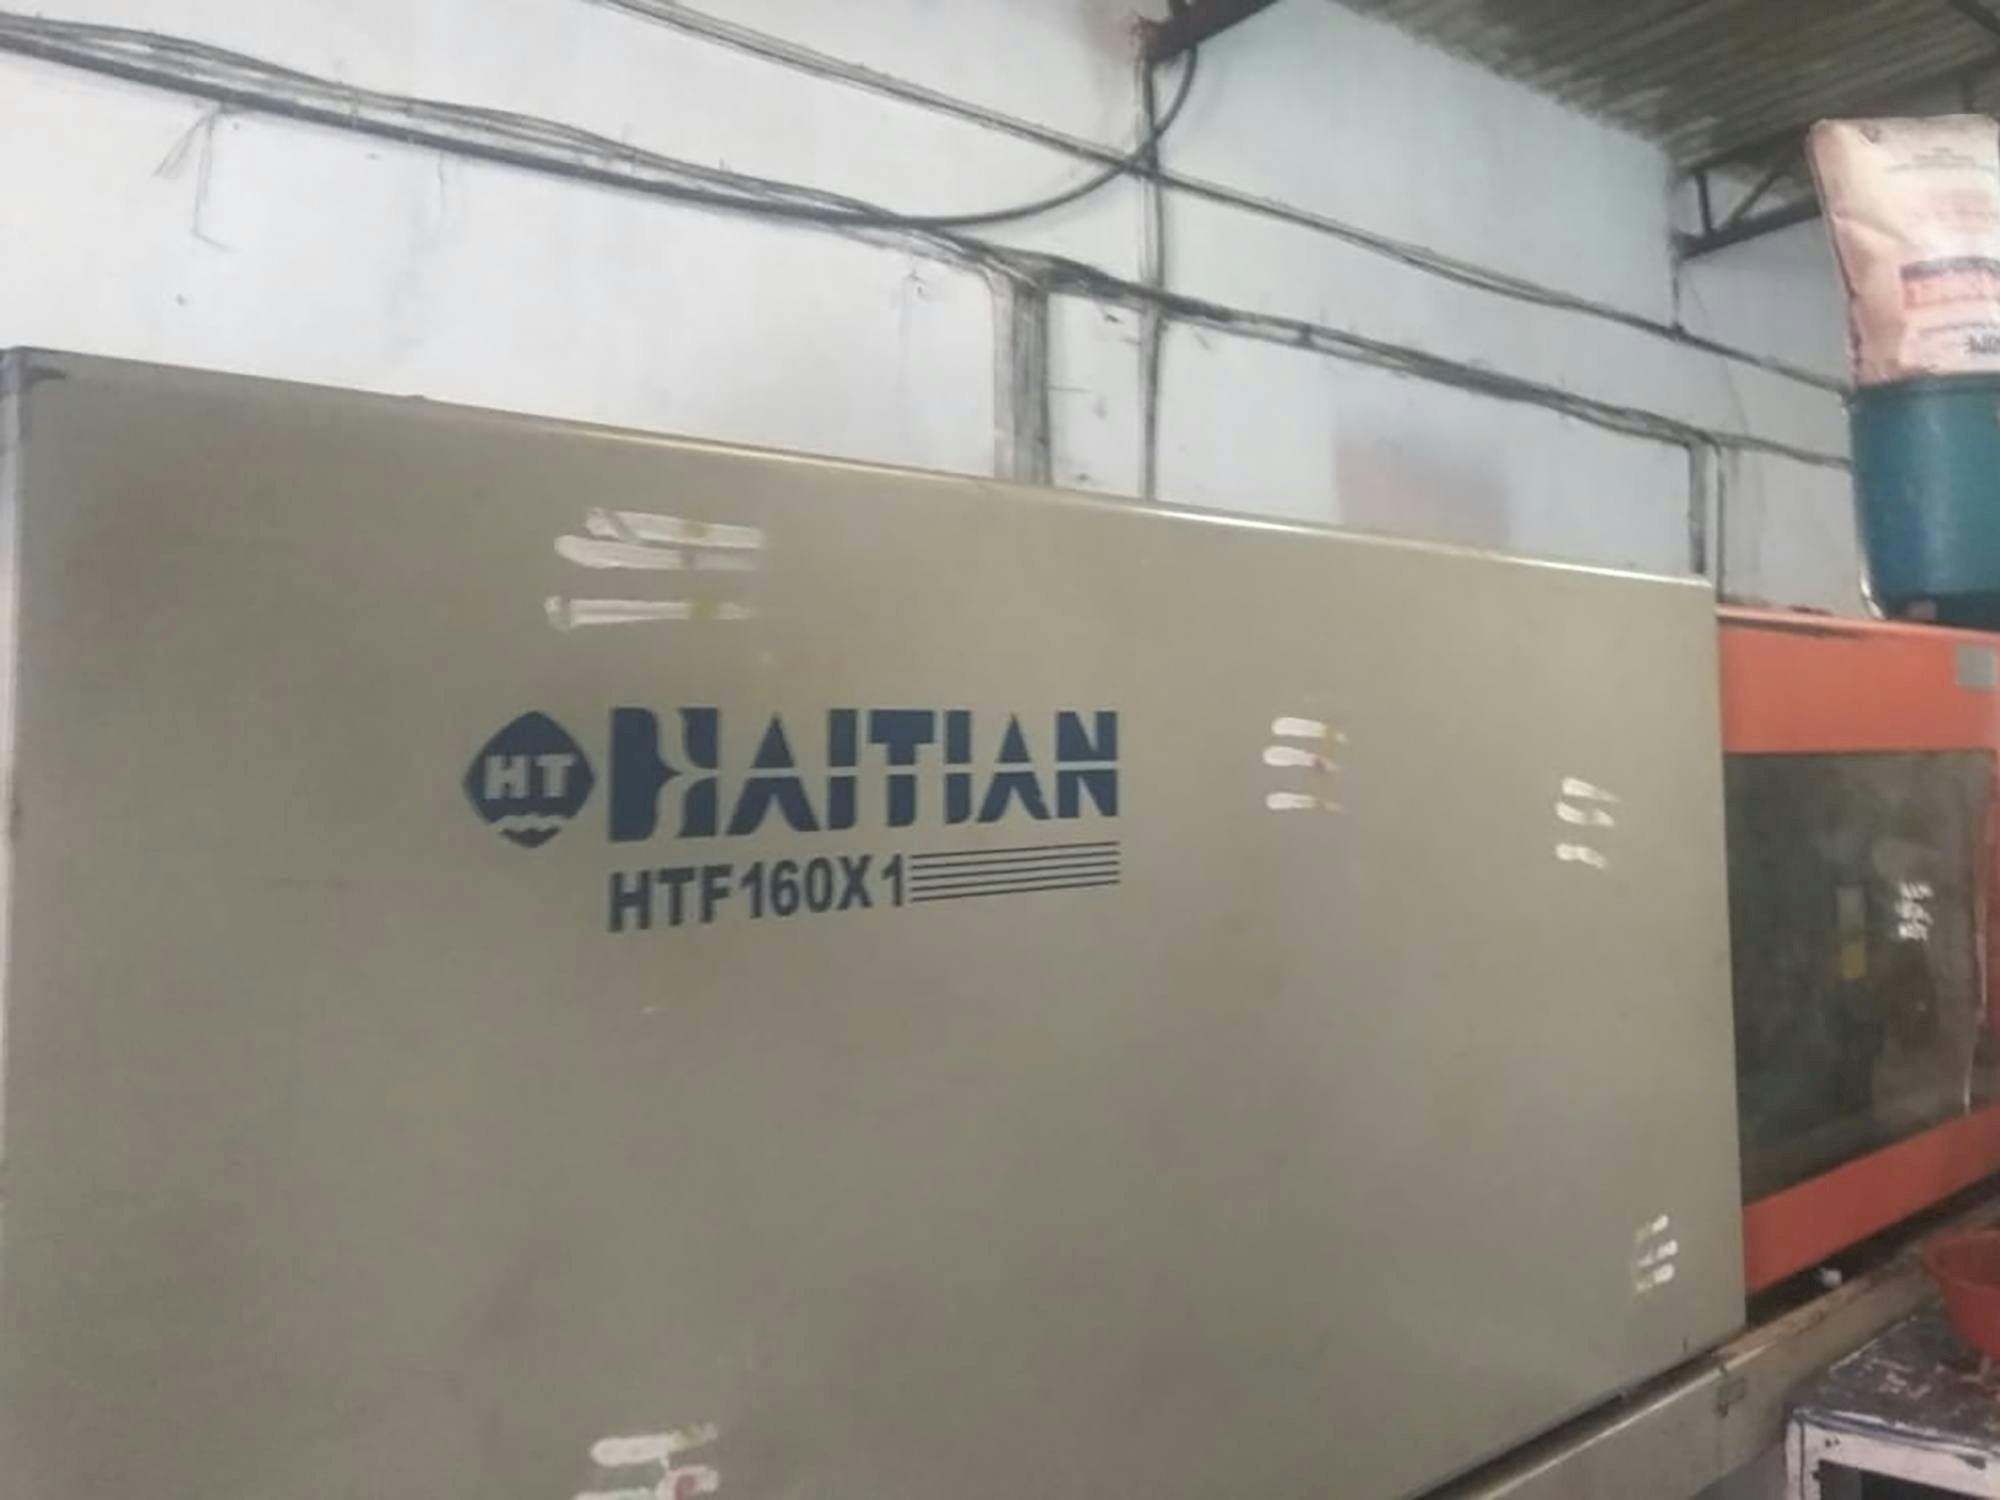 A HAITIAN HTF160X1 gép elölnézete